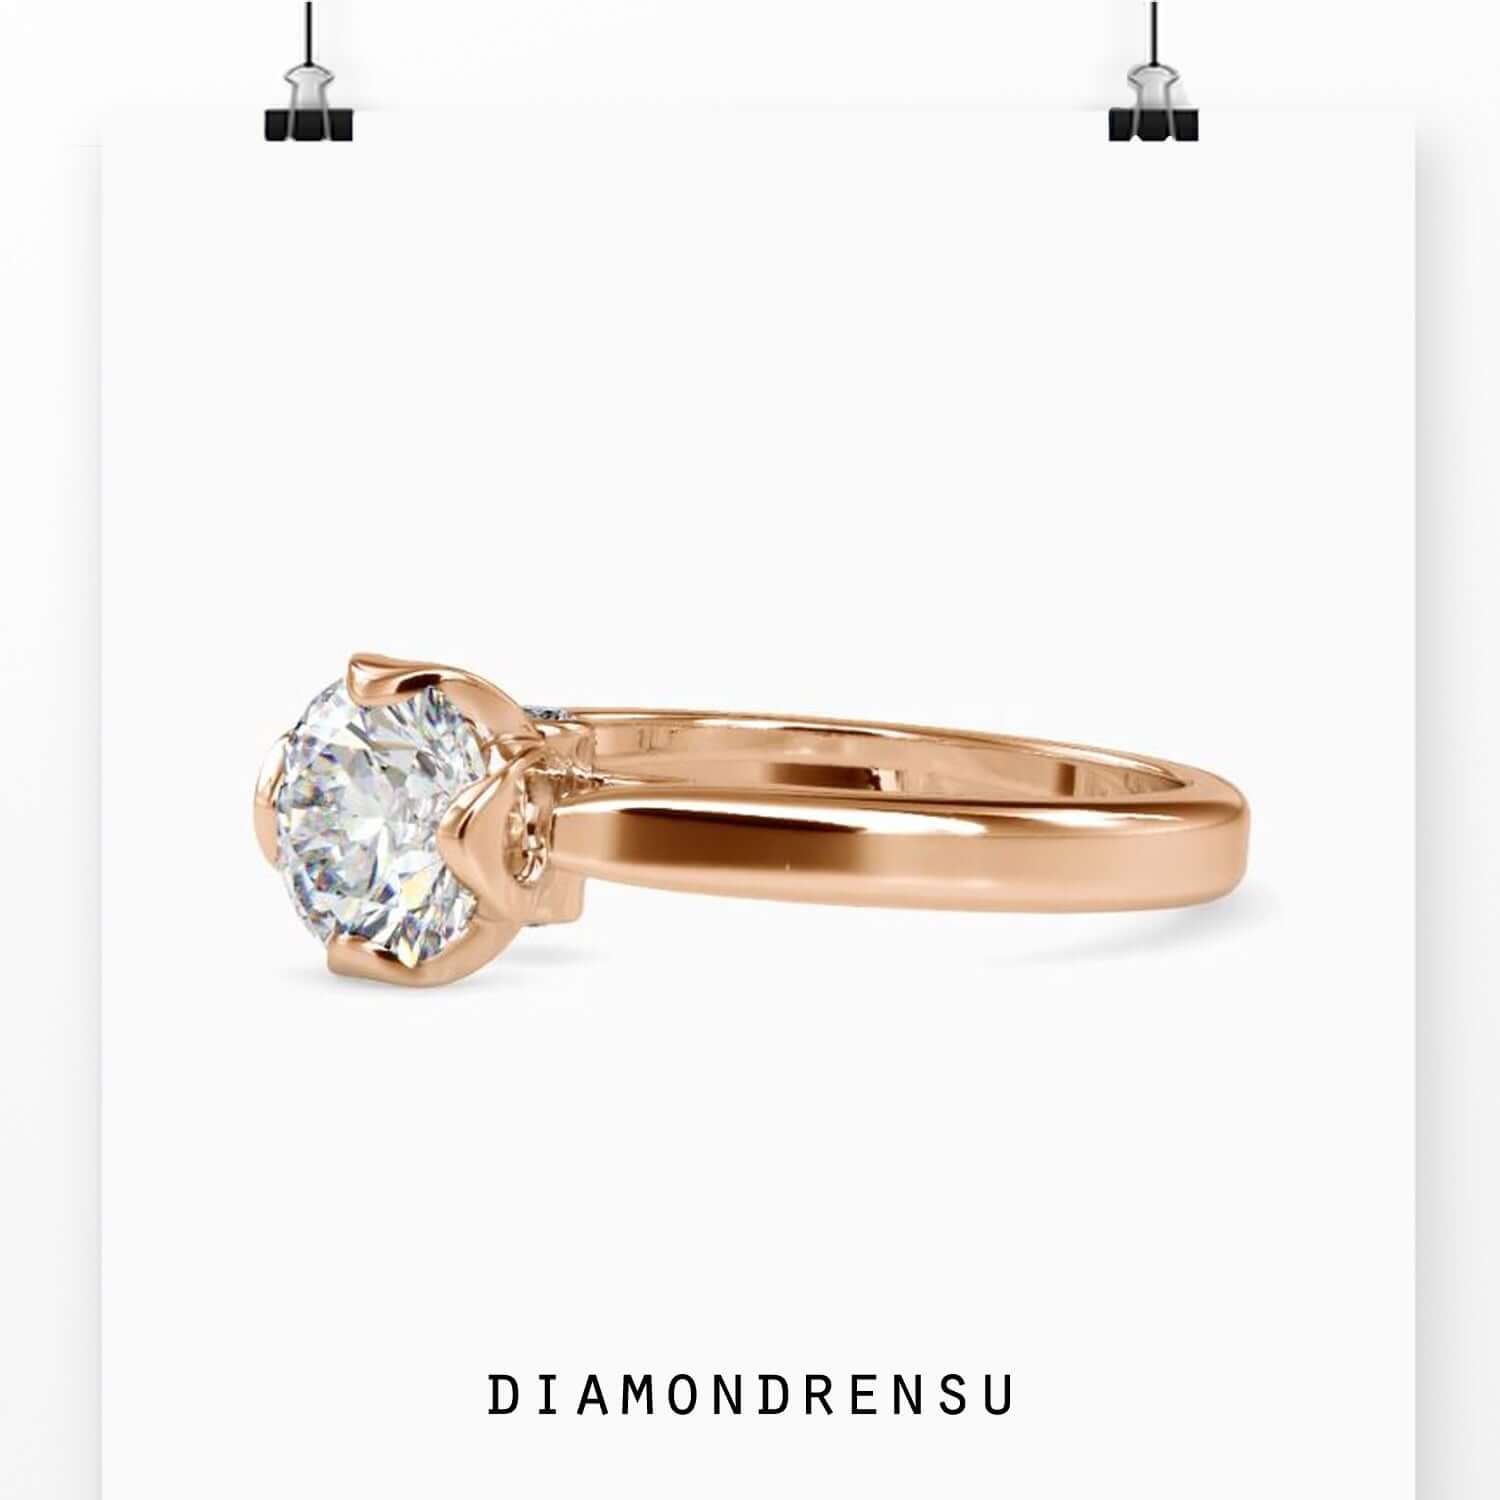 customized rings - diamondrensu